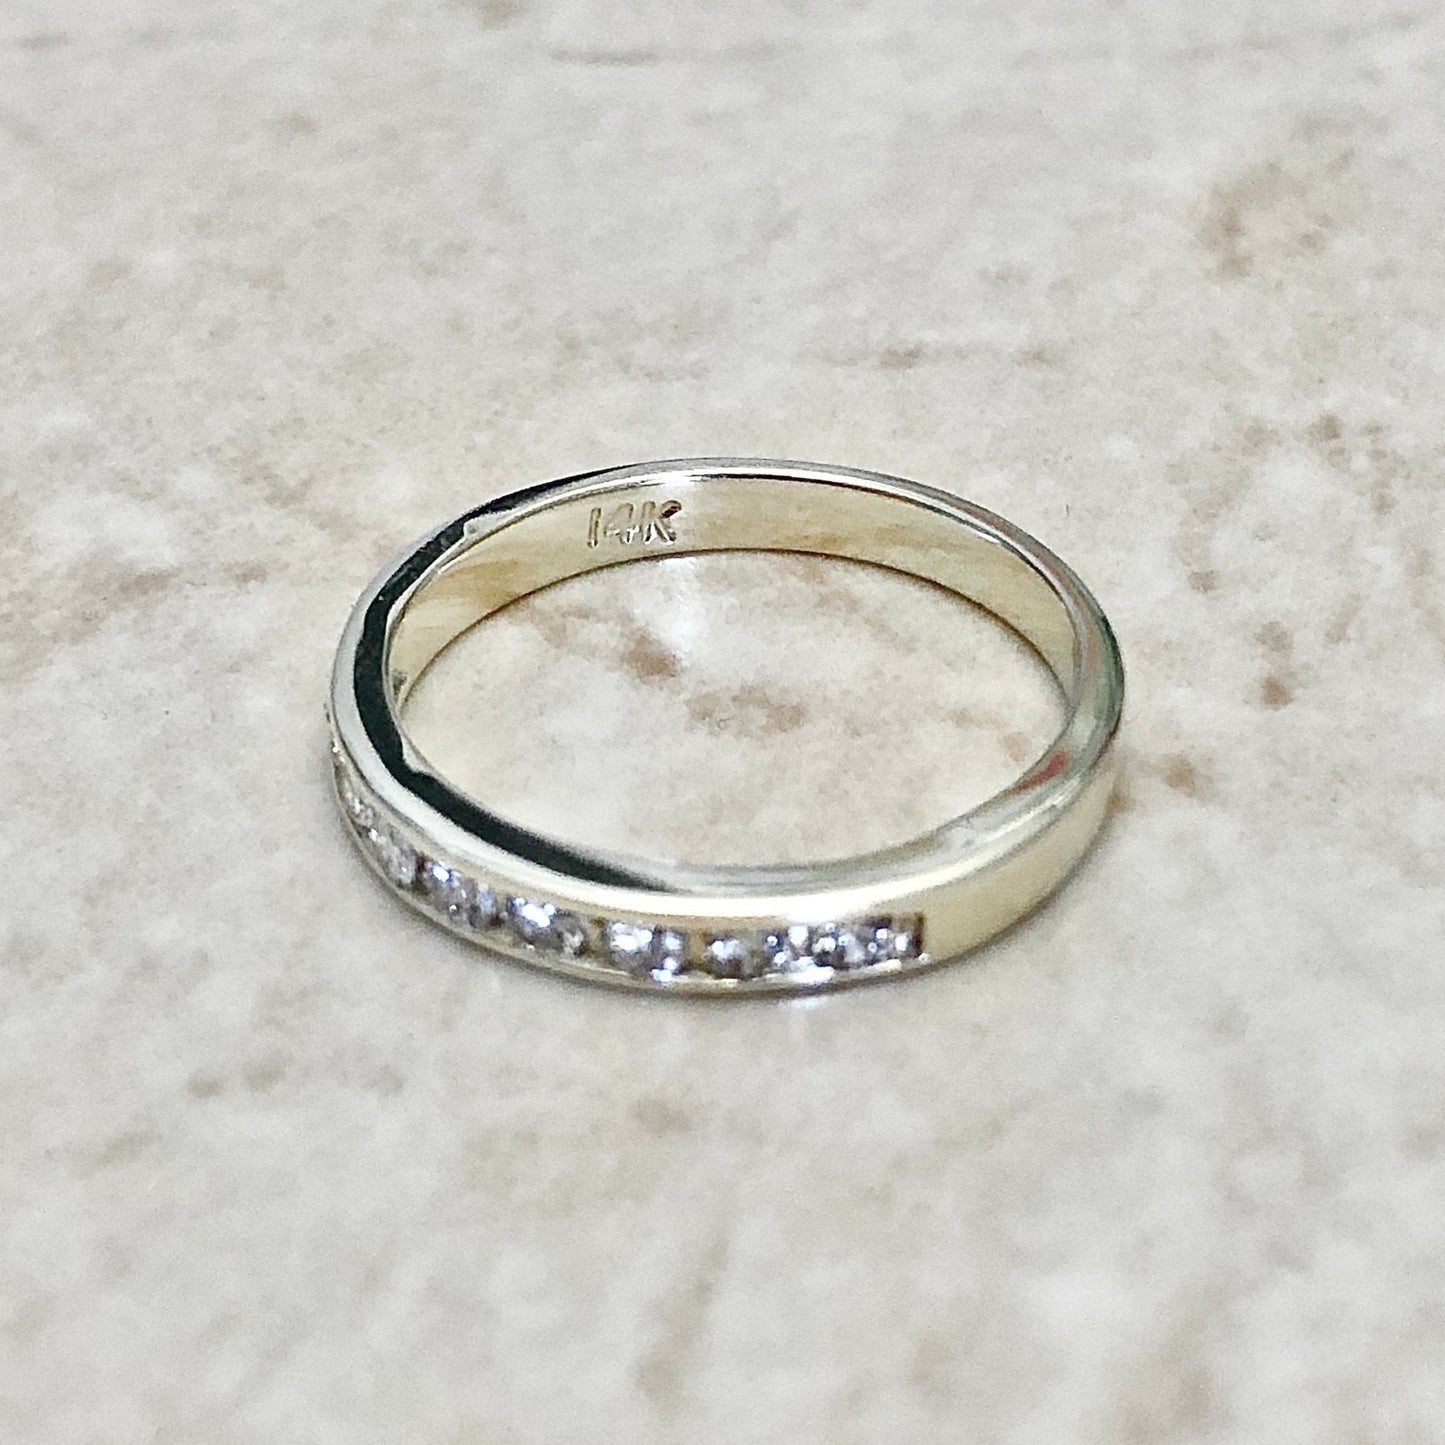 14K Half Eternity Diamond Band Ring - Yellow Gold Channel Set Band - Wedding Band - Diamond Eternity Ring - Anniversary Ring -Birthday Gift